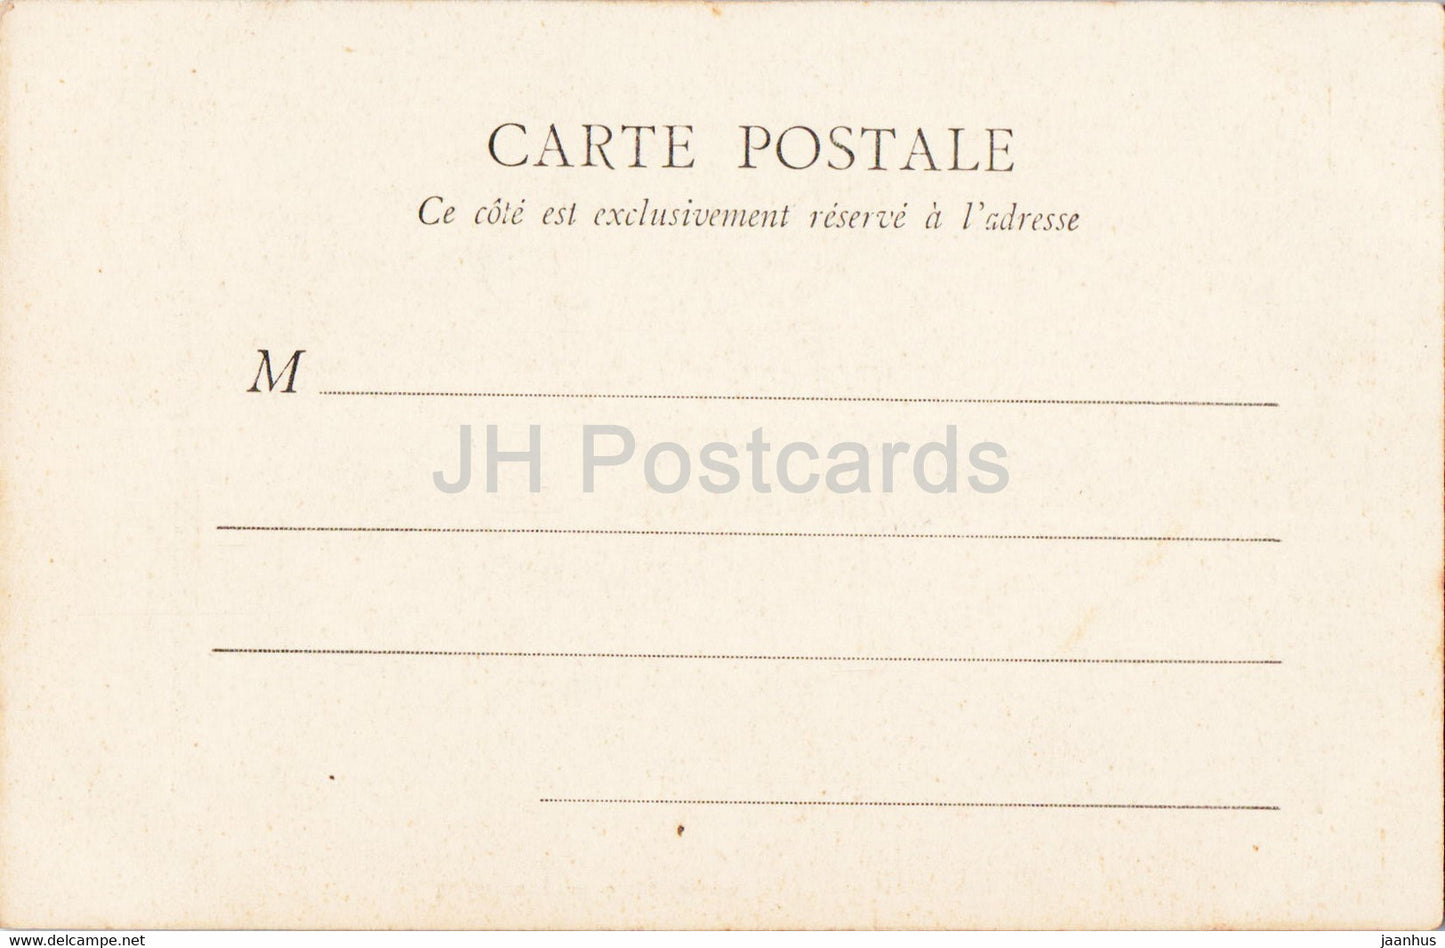 Amiens - Kathedrale - Portail de la Vierge dorée - Kathedrale - 56 - alte Postkarte - Frankreich - unbenutzt